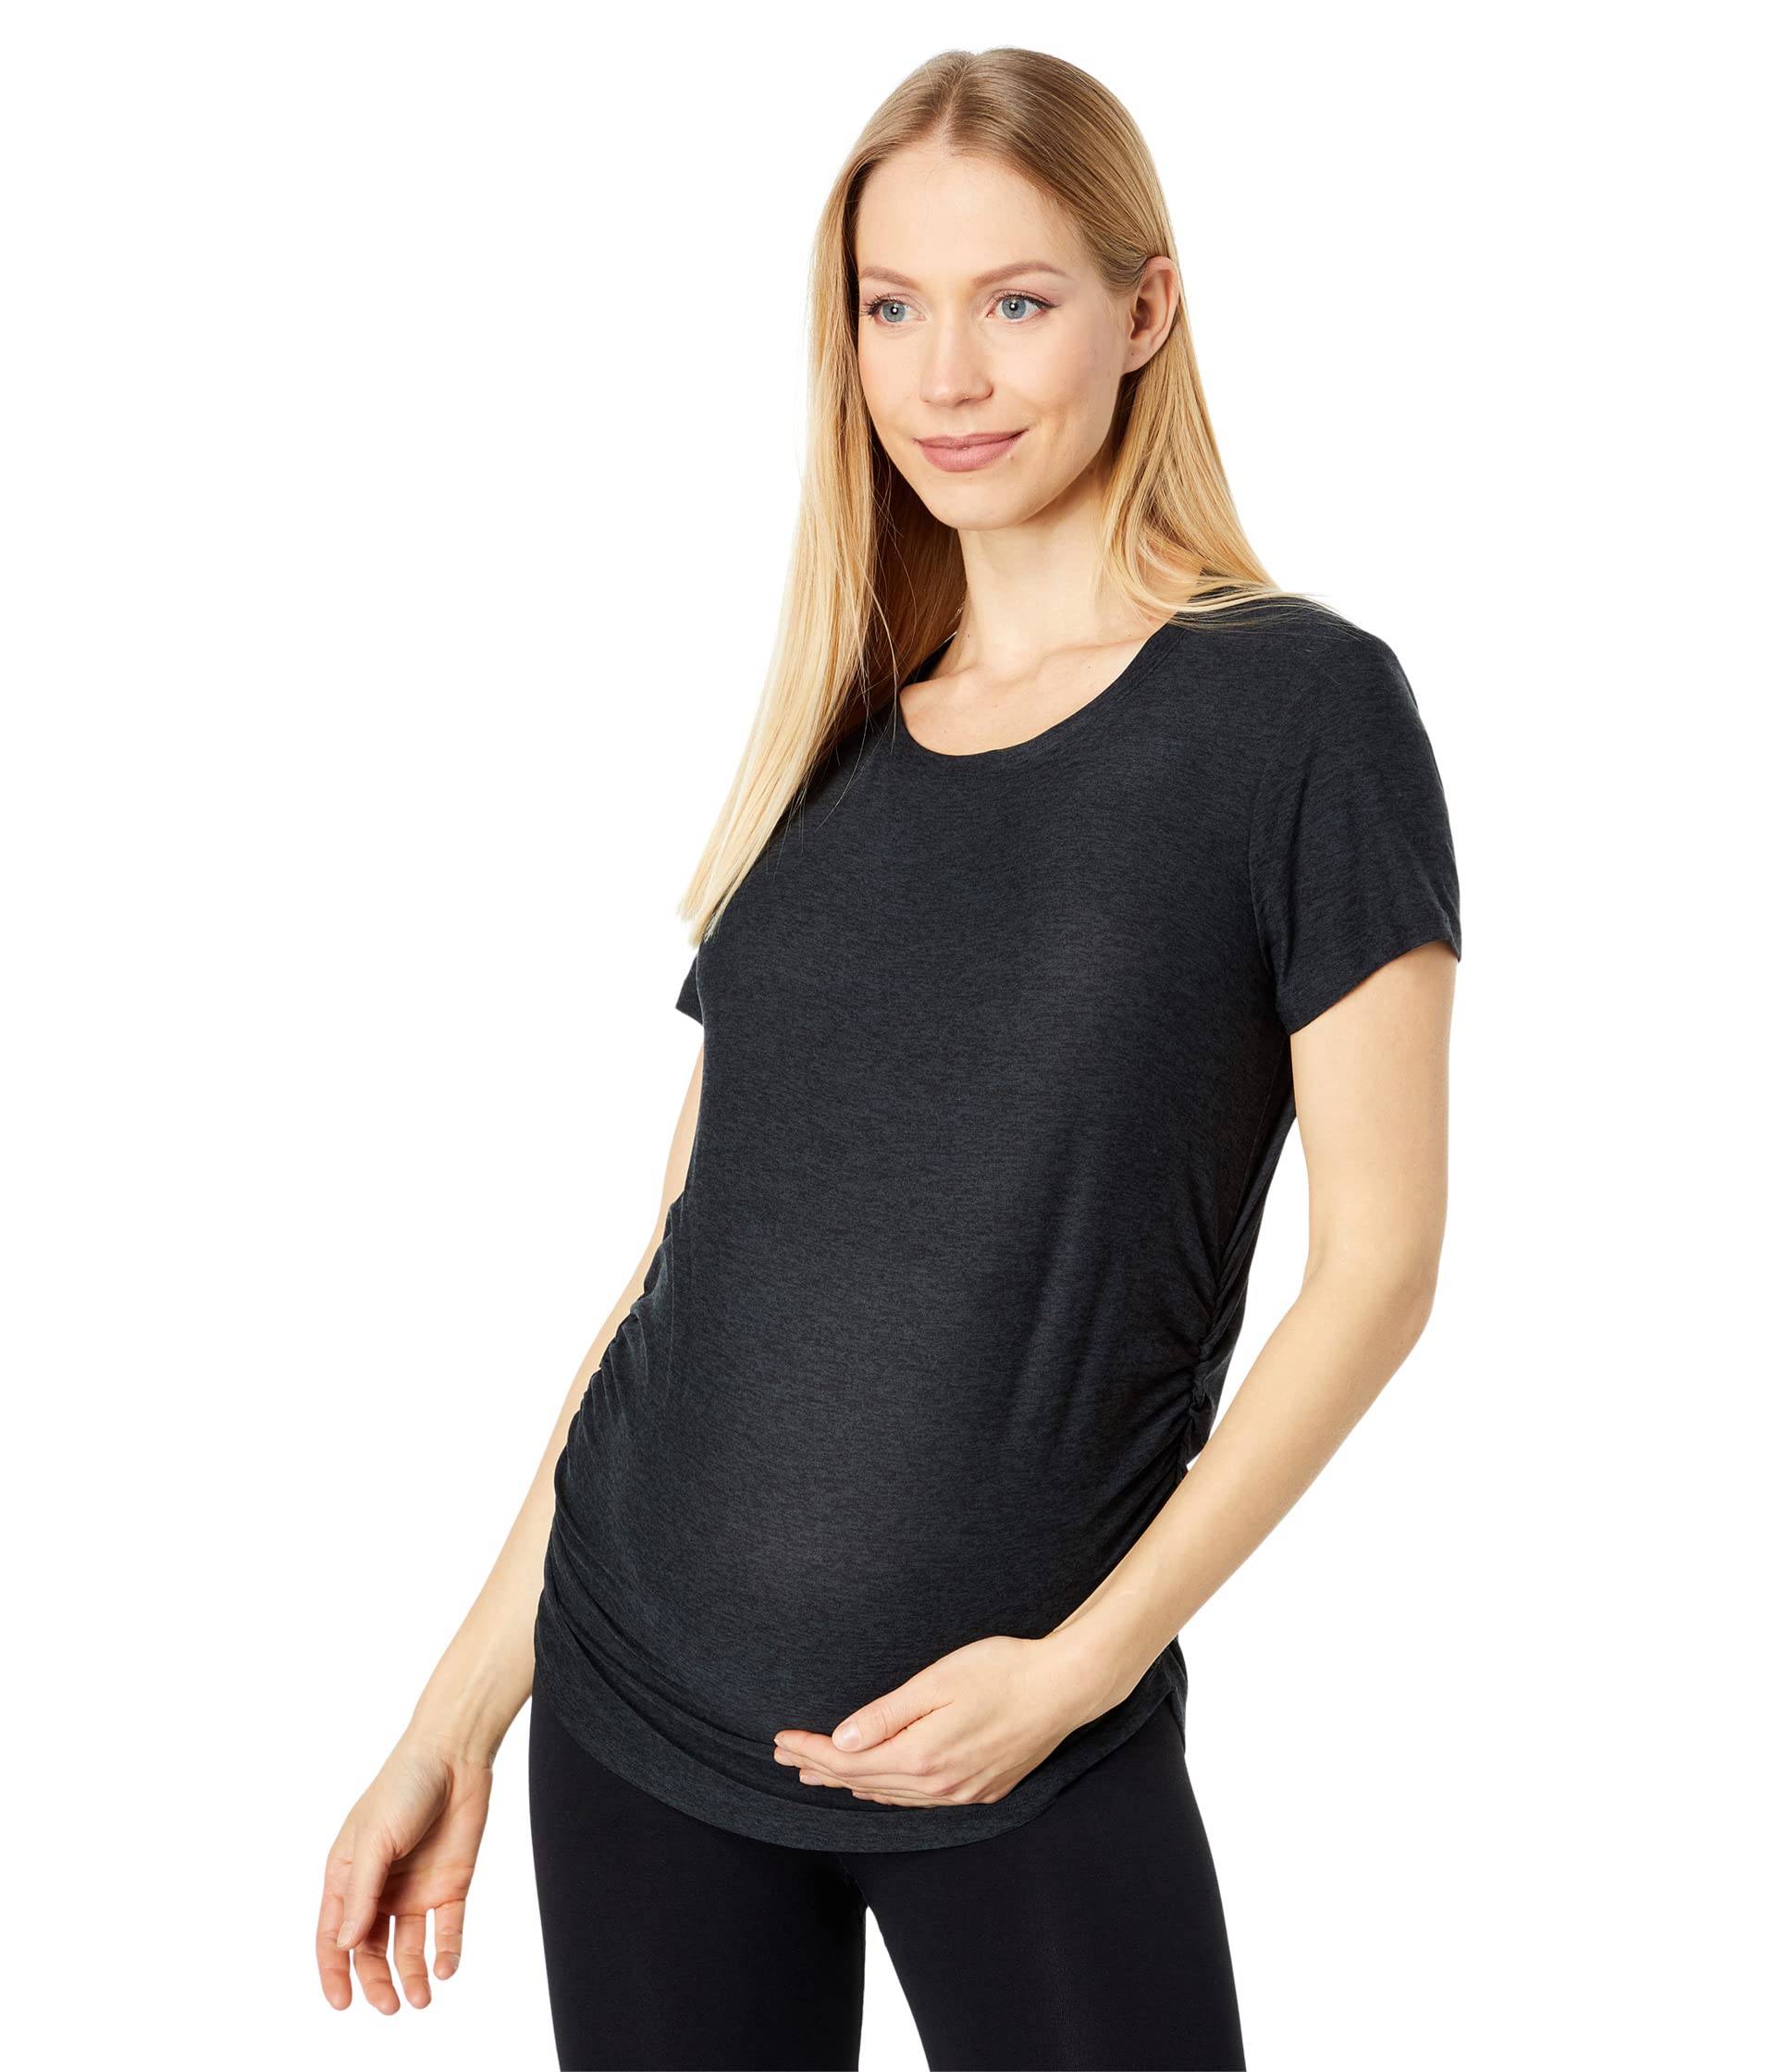 Легкая футболка для беременных на низком пухе Spacedye Beyond Yoga